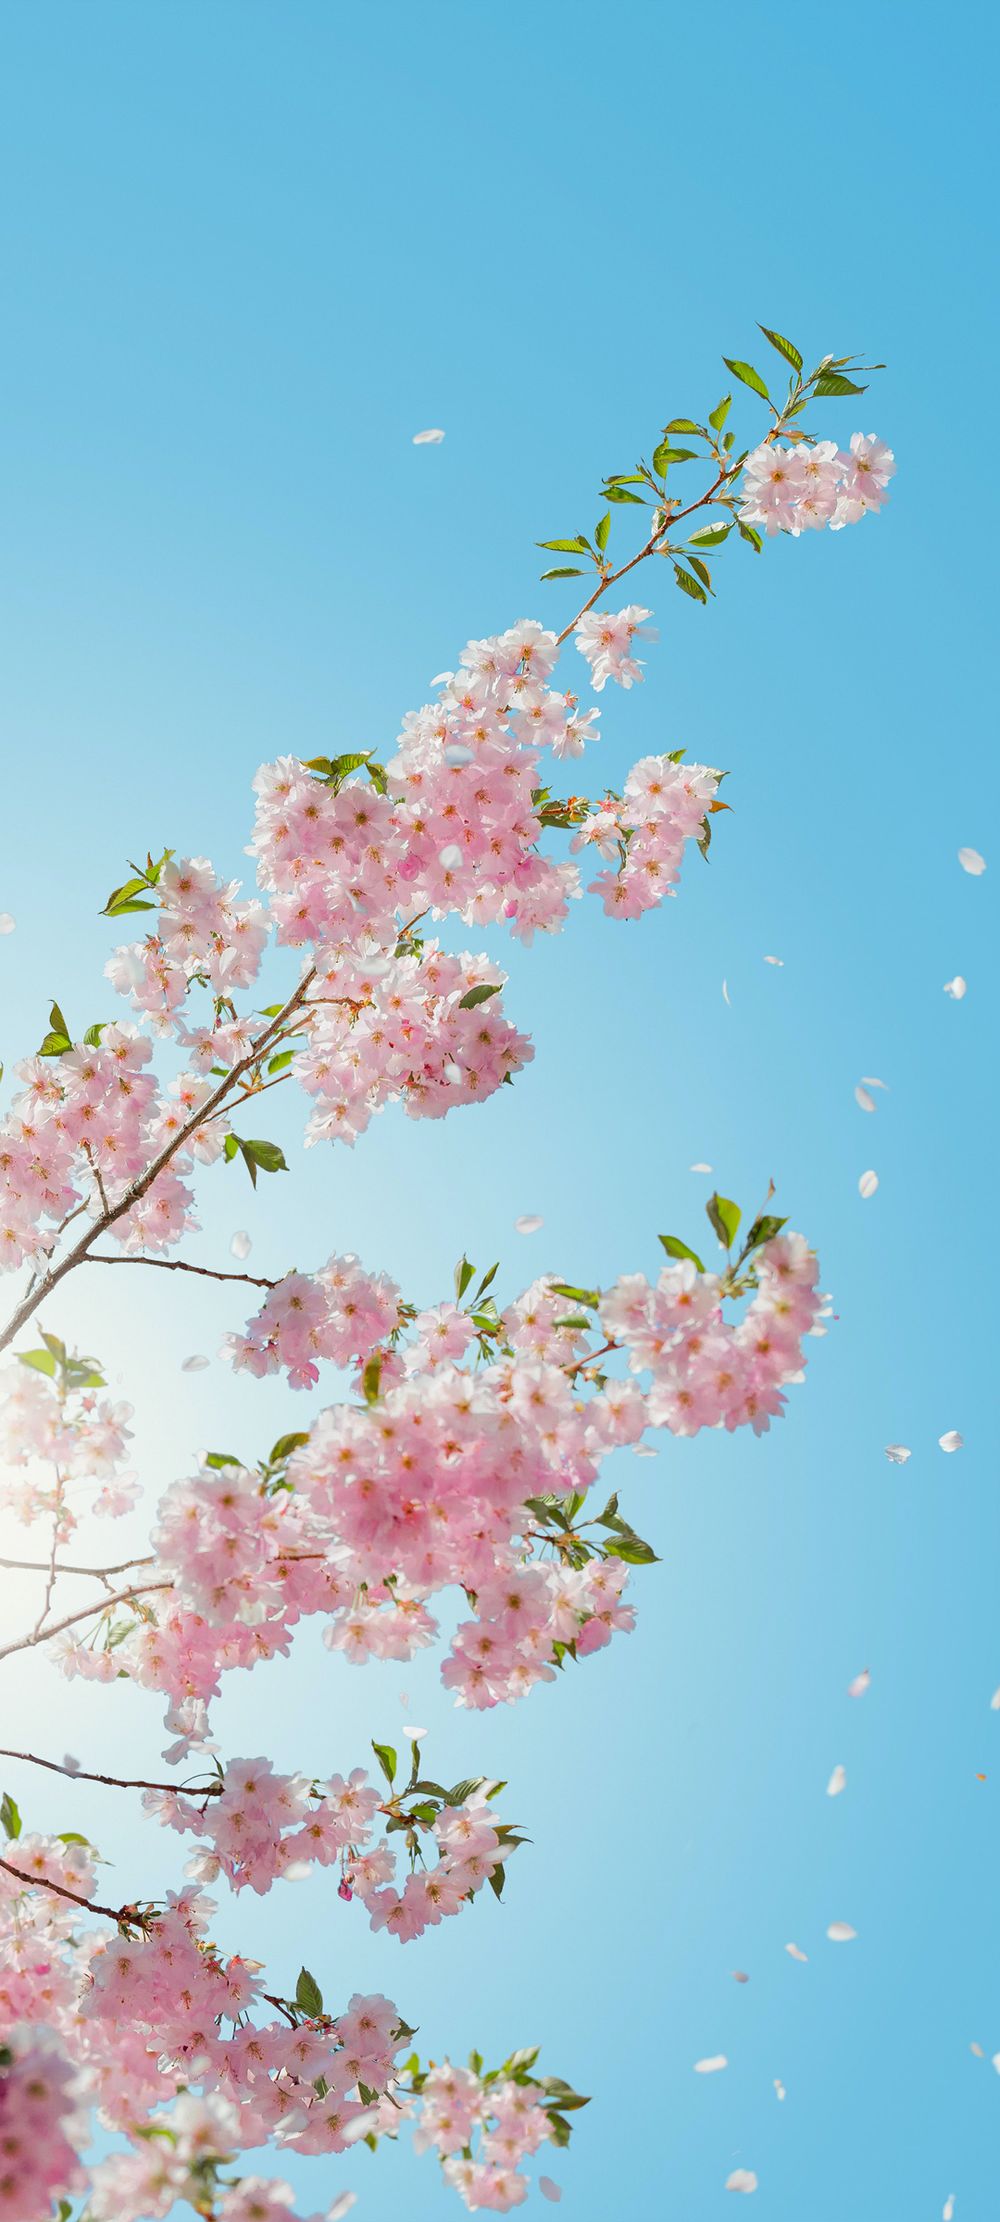 晴朗的天空映照樱花枝头上的樱花